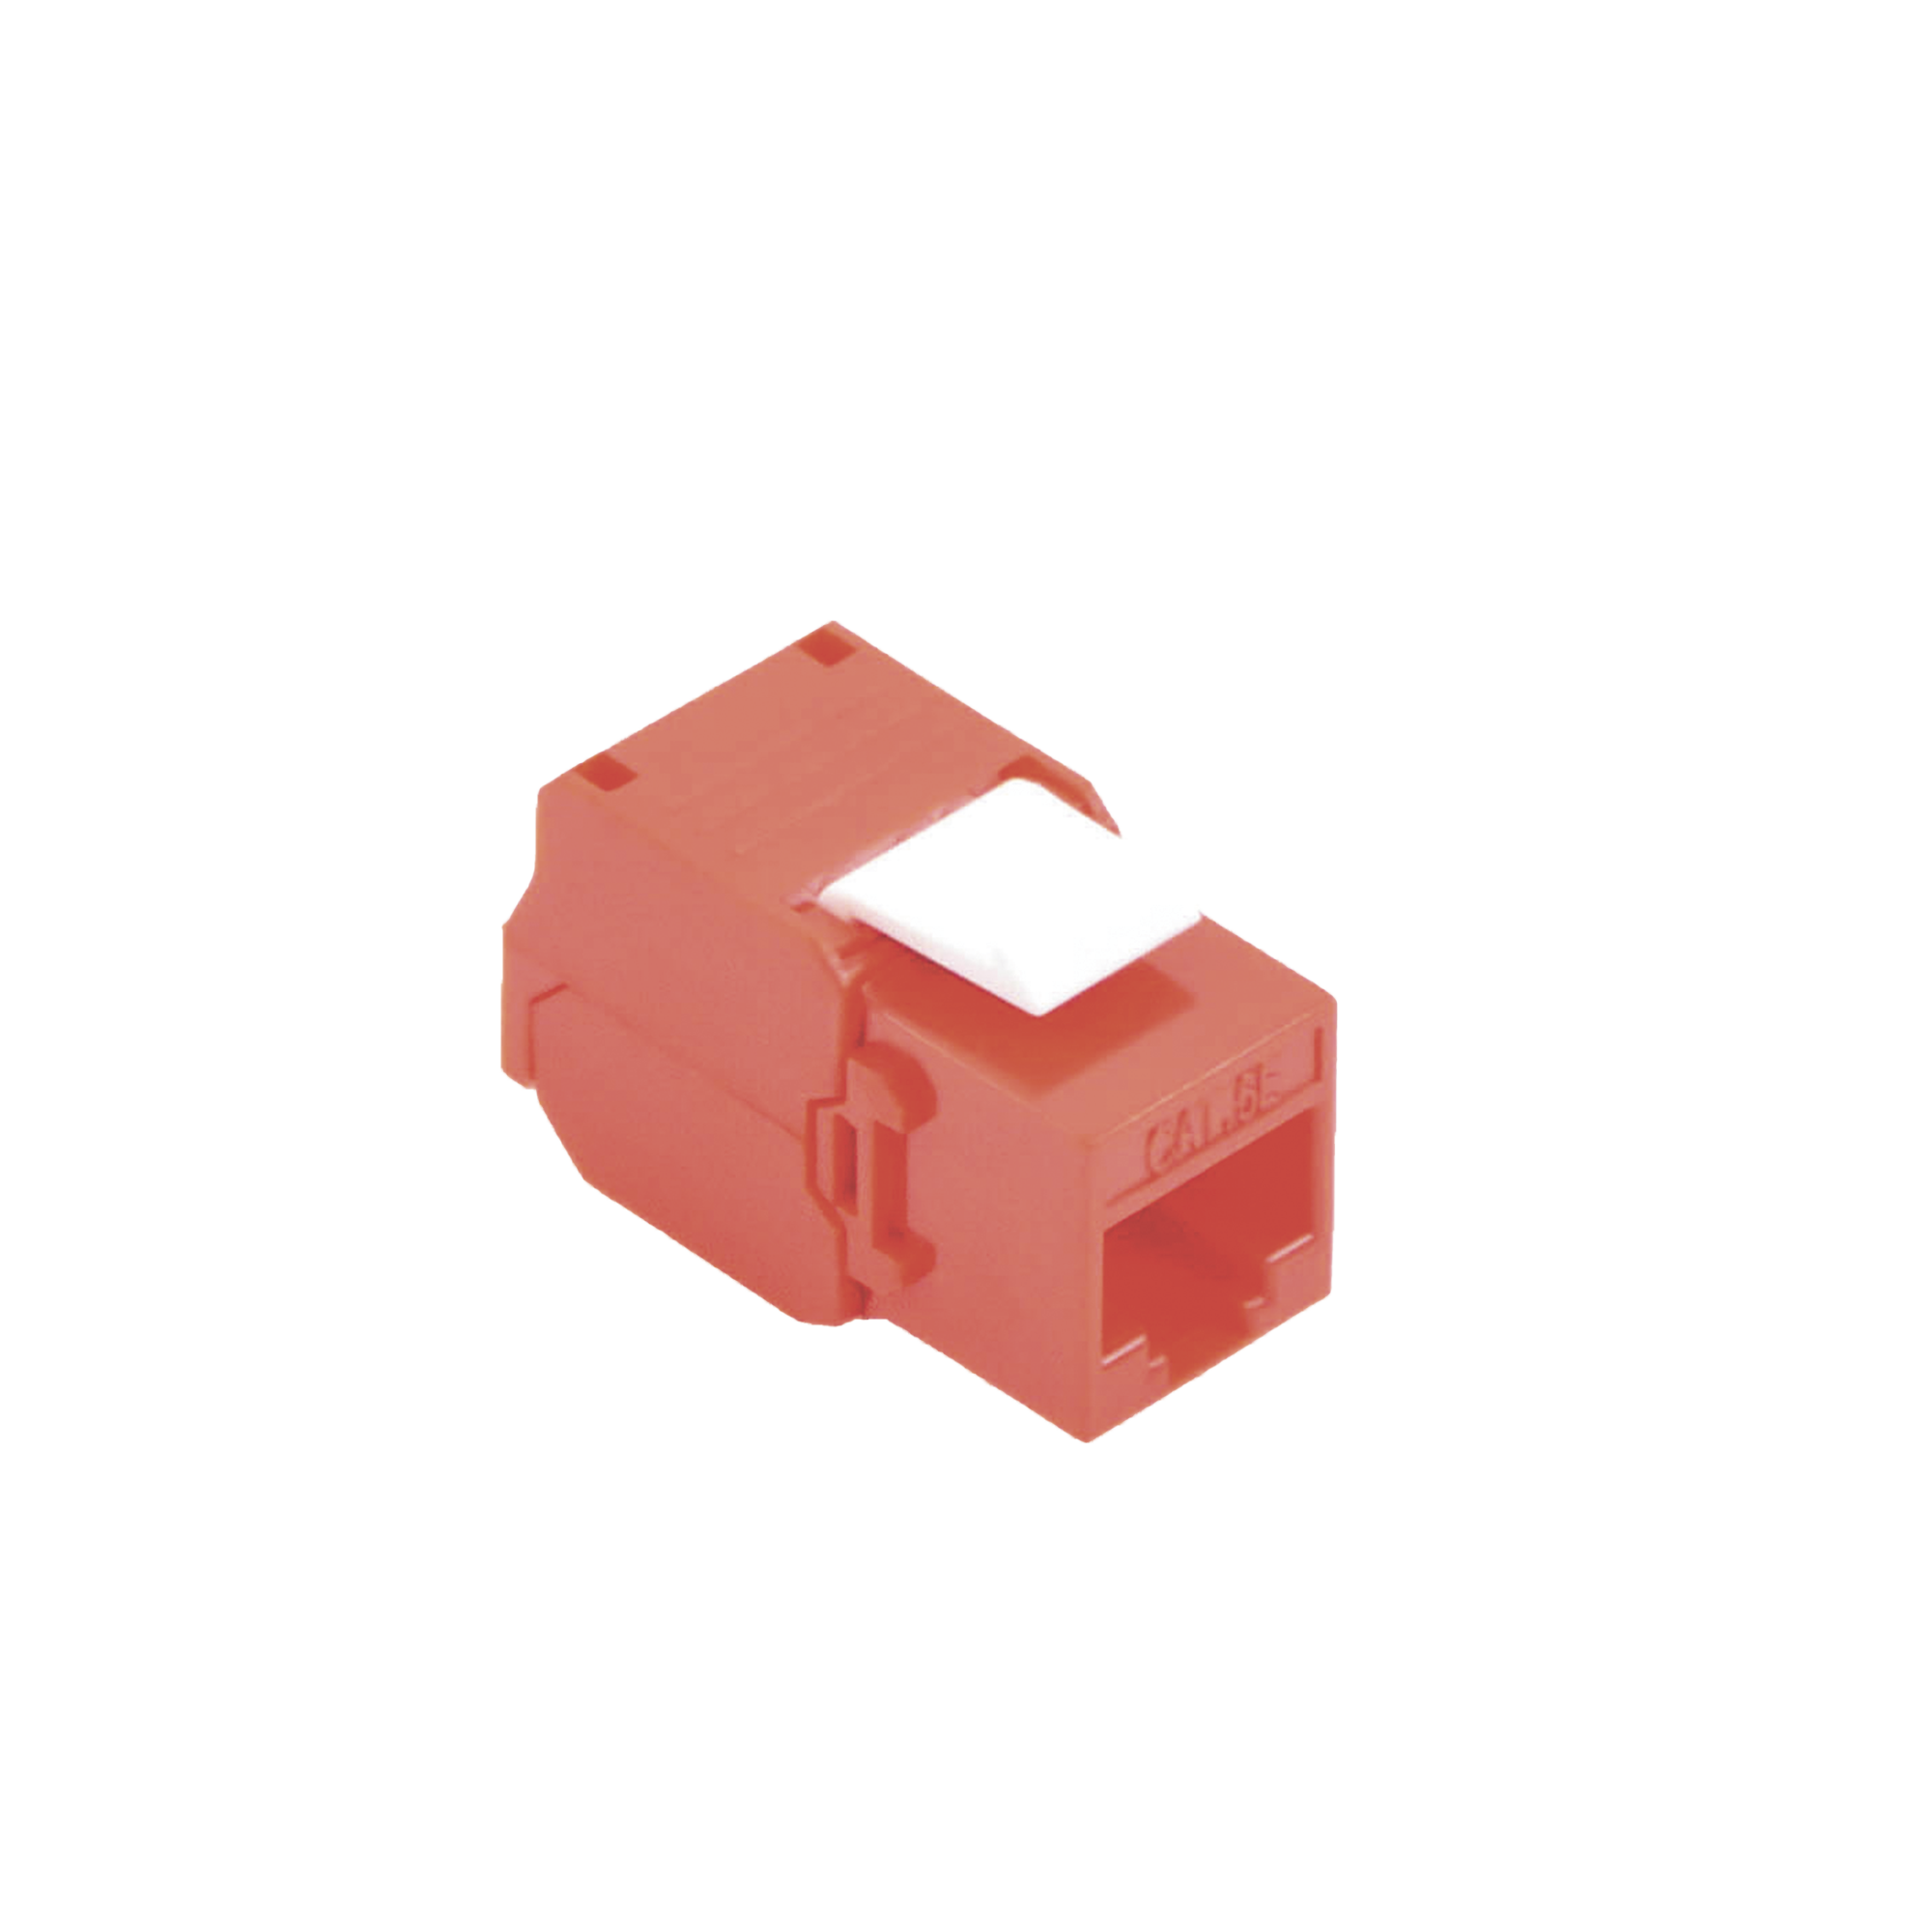 Módulo Jack Keystone Cat5e (toolless), con terminación en ángulo 180 º Color Rojo, Compatible con Faceplate y Patchpanel Linkedpro